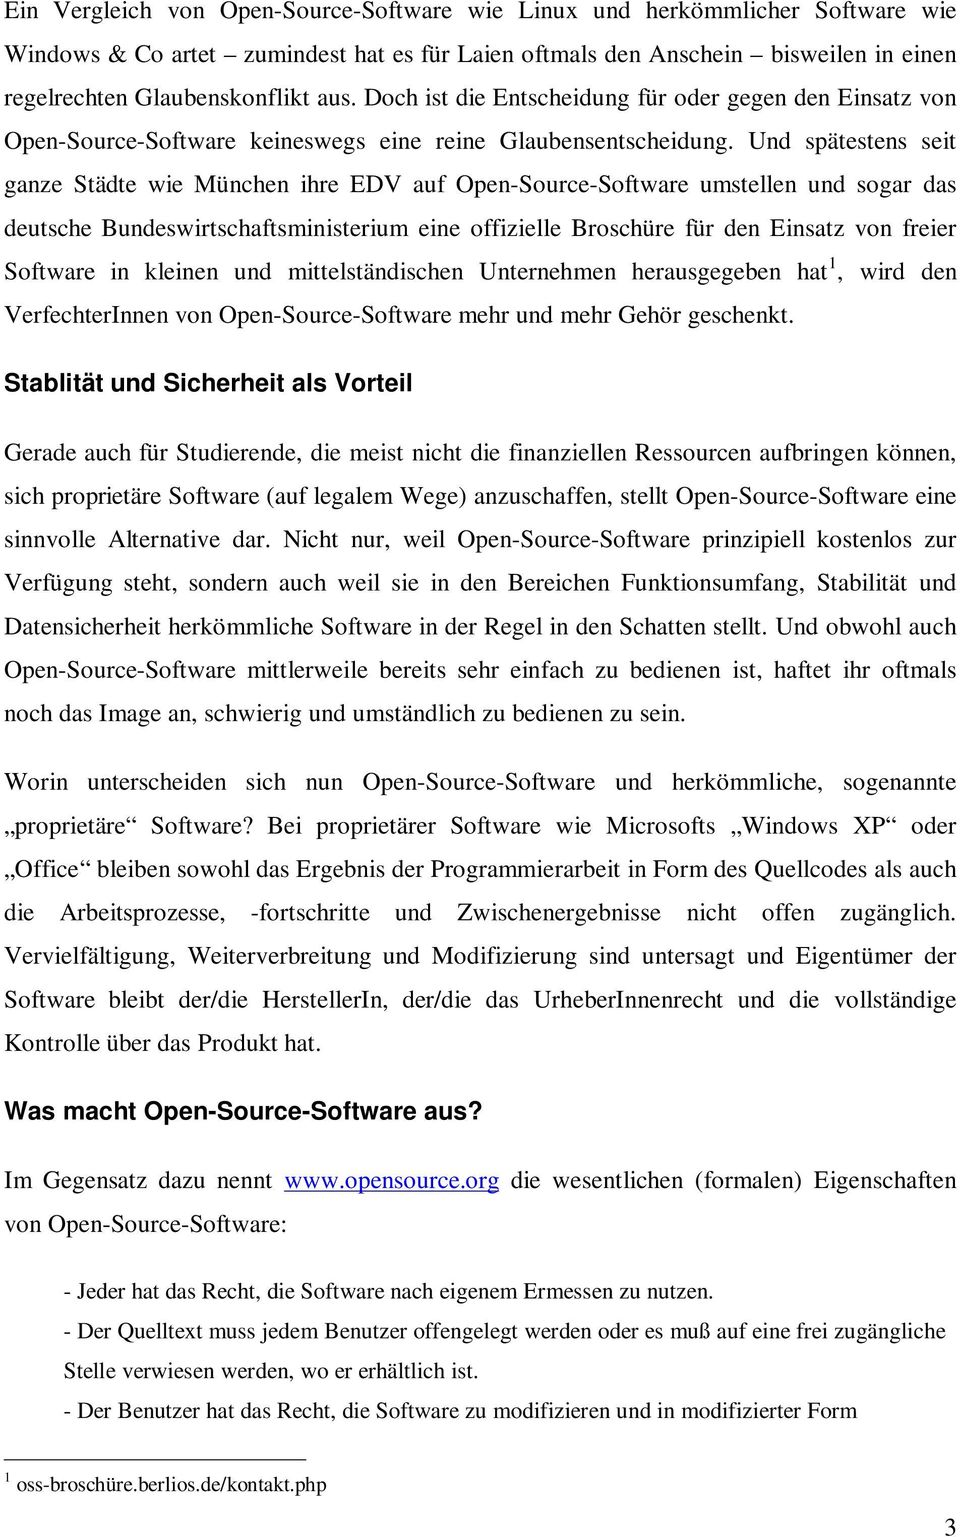 Und spätestens seit ganze Städte wie München ihre EDV auf Open-Source-Software umstellen und sogar das deutsche Bundeswirtschaftsministerium eine offizielle Broschüre für den Einsatz von freier